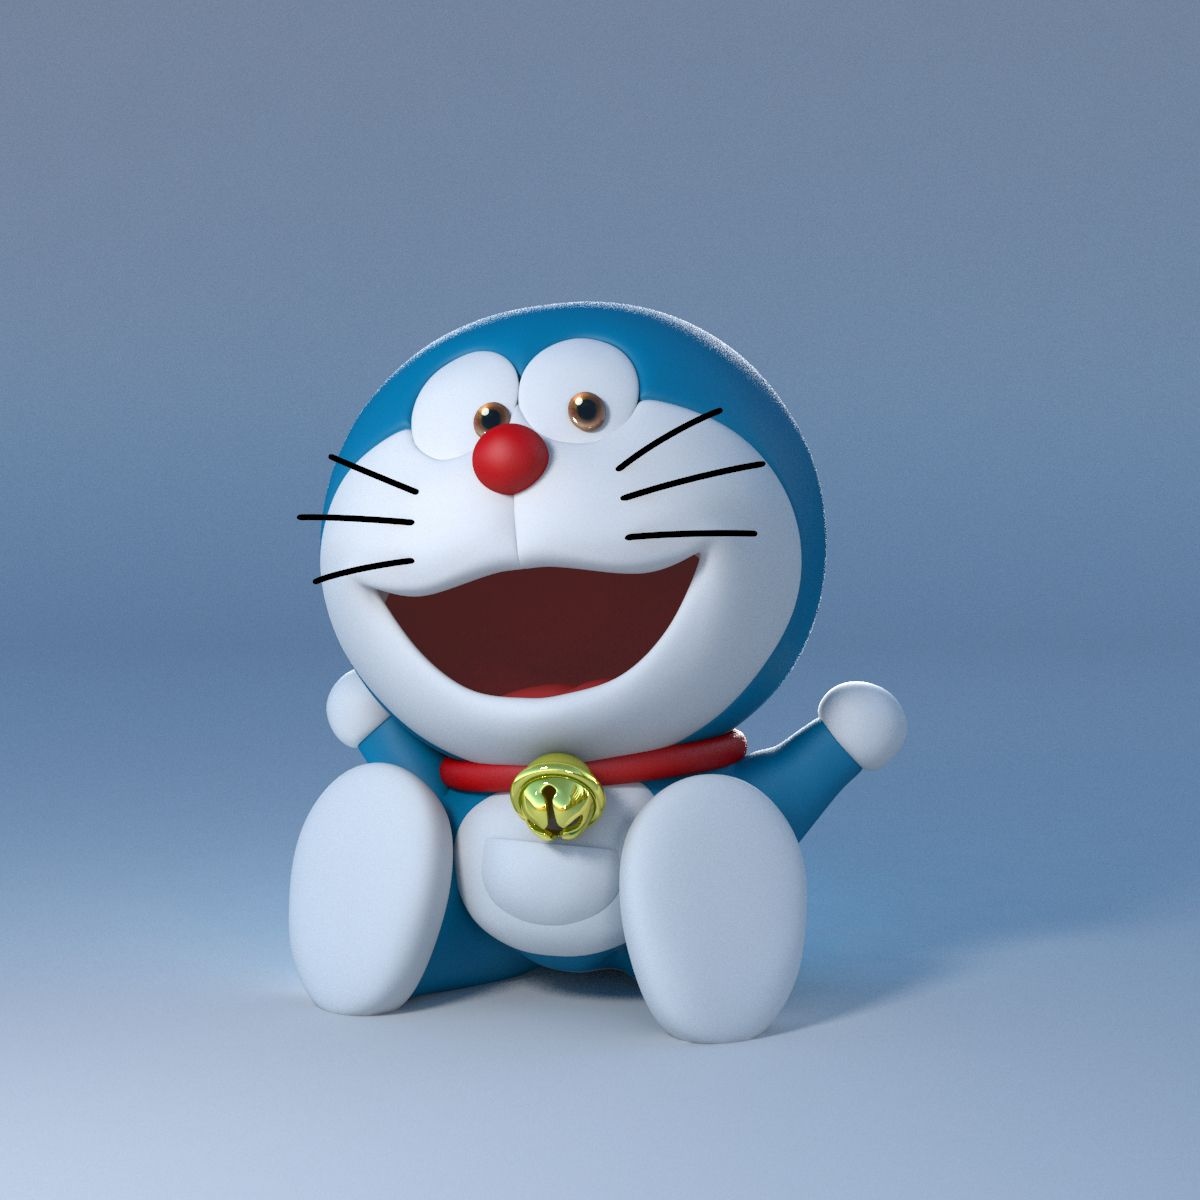 Cute Doraemon - Smiling